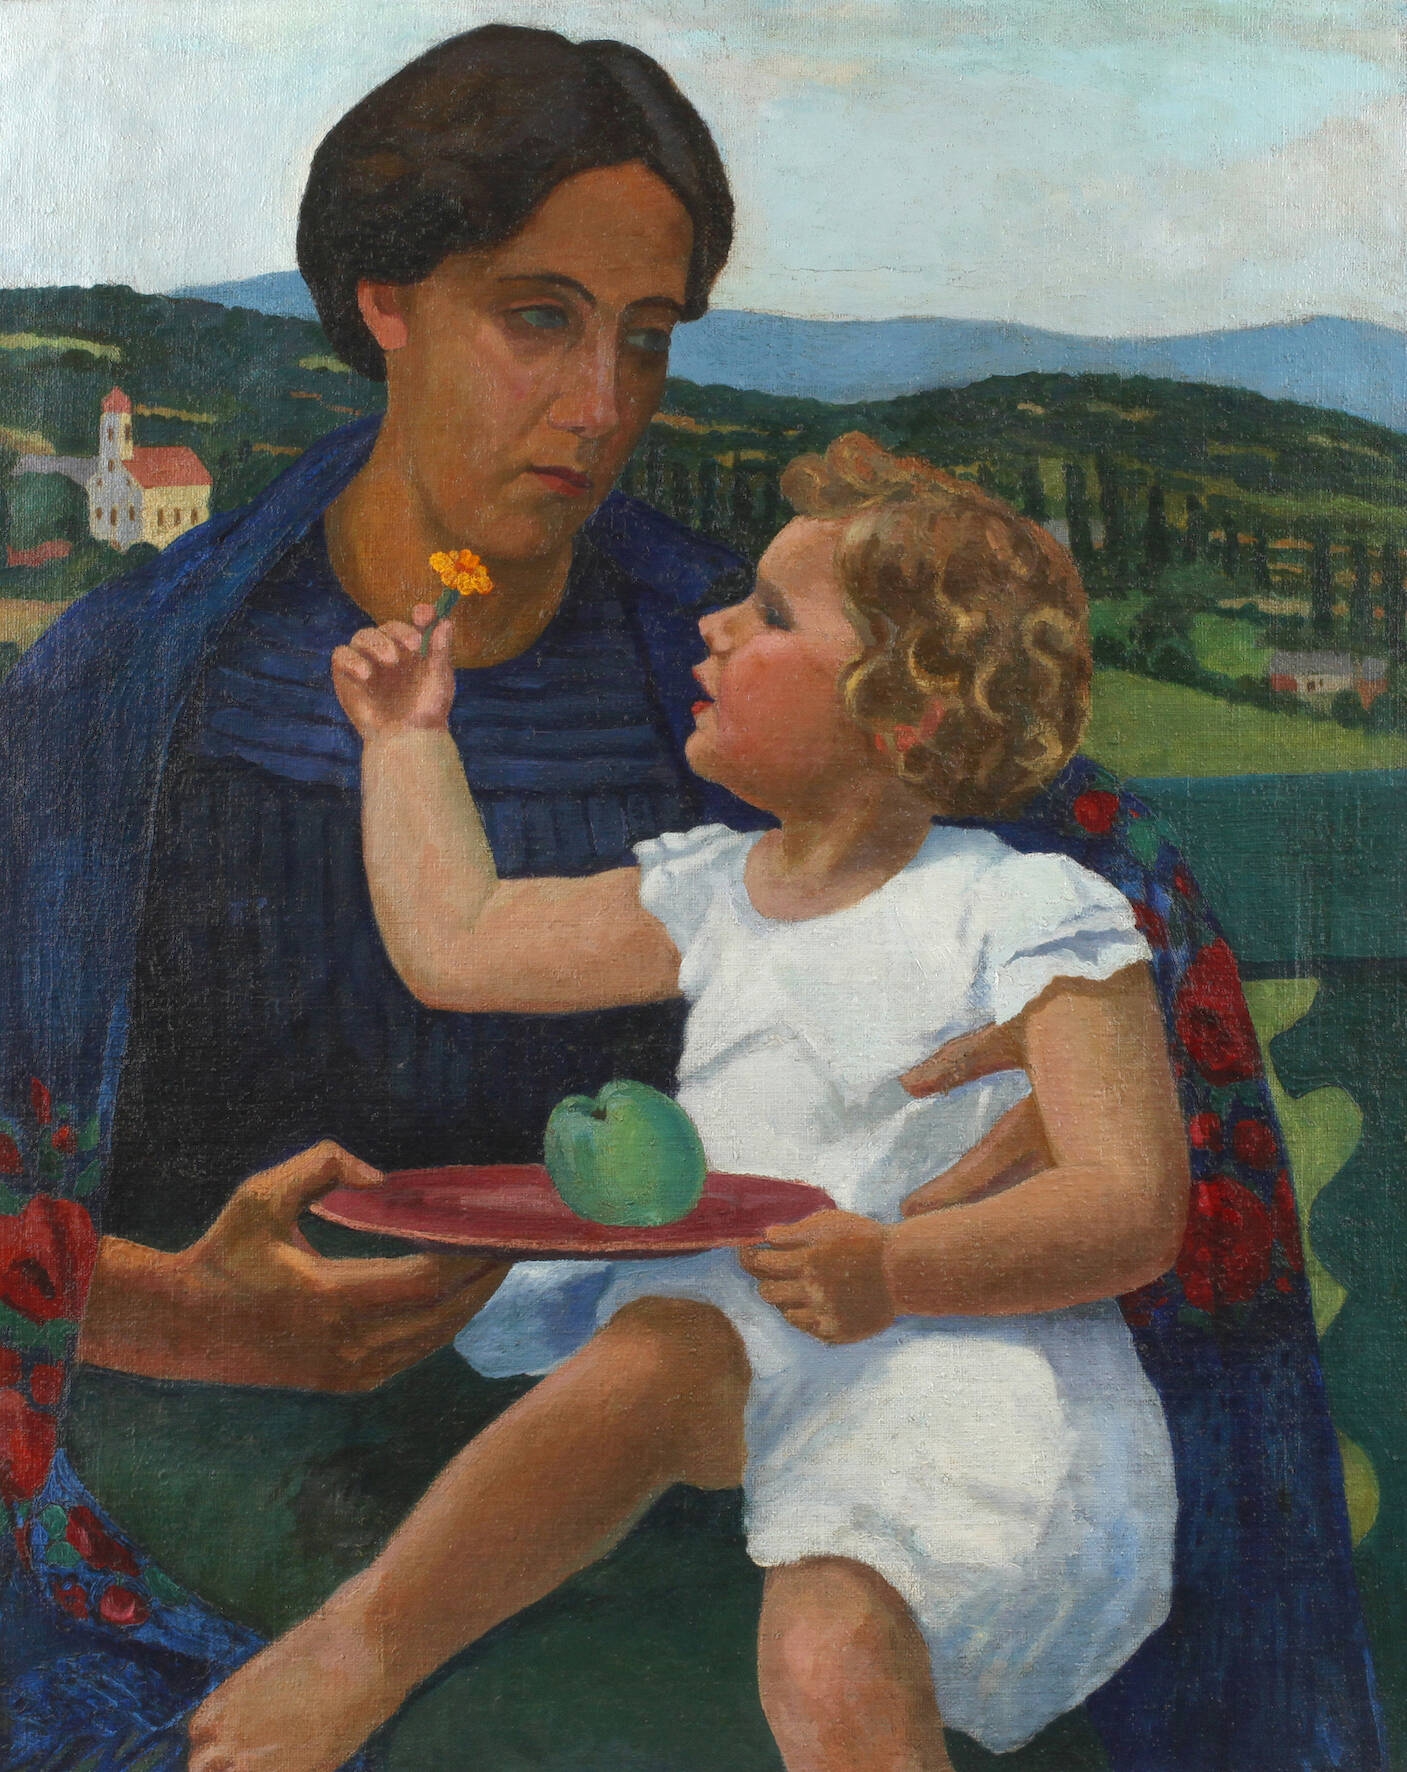 Mutter mit Kind by József Bató, 1910